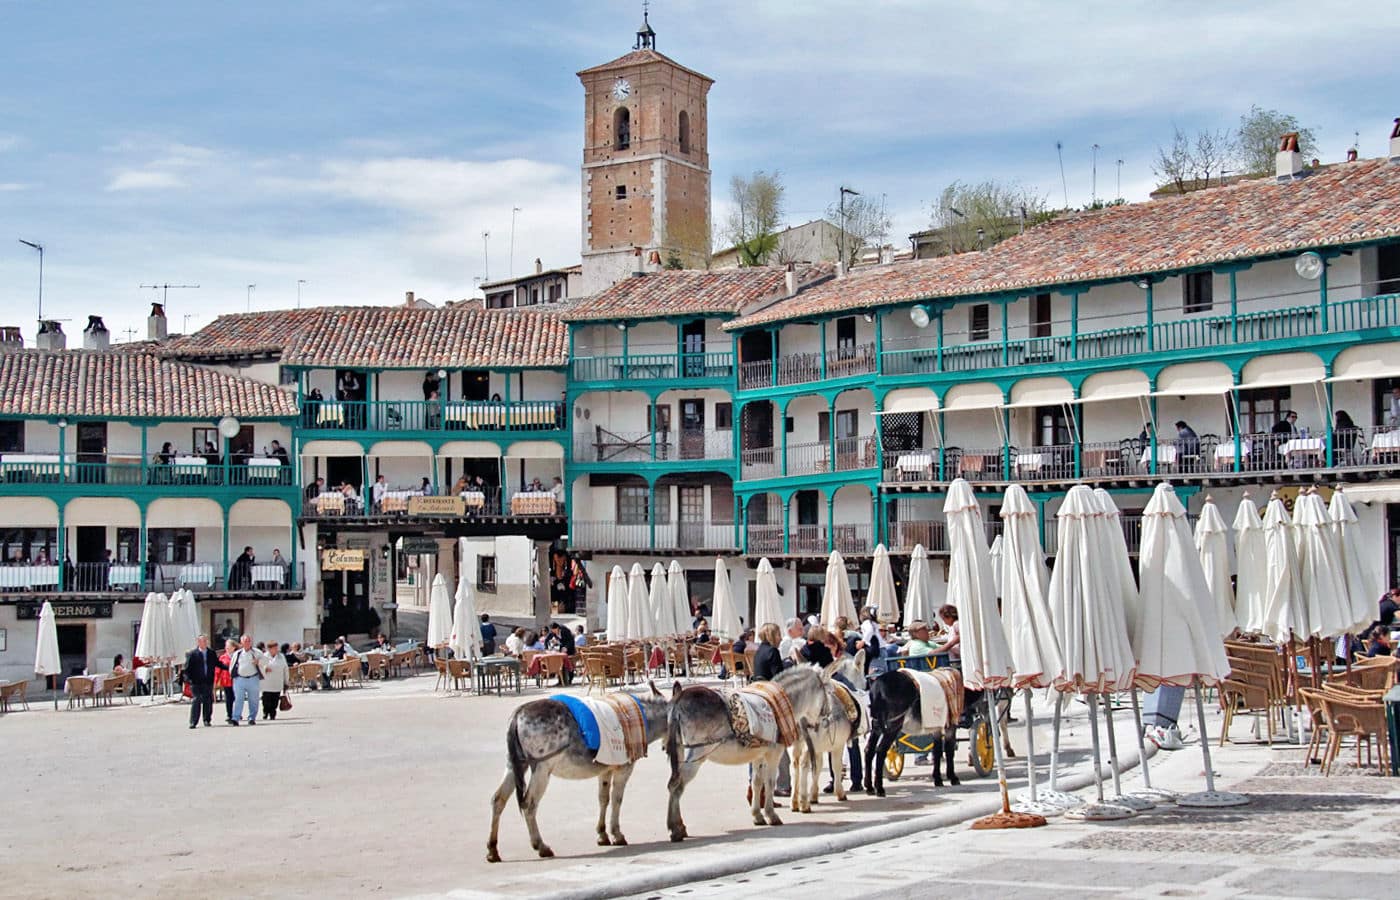 Qué ver y hacer en Chinchón, uno de los pueblos más bonitos de España